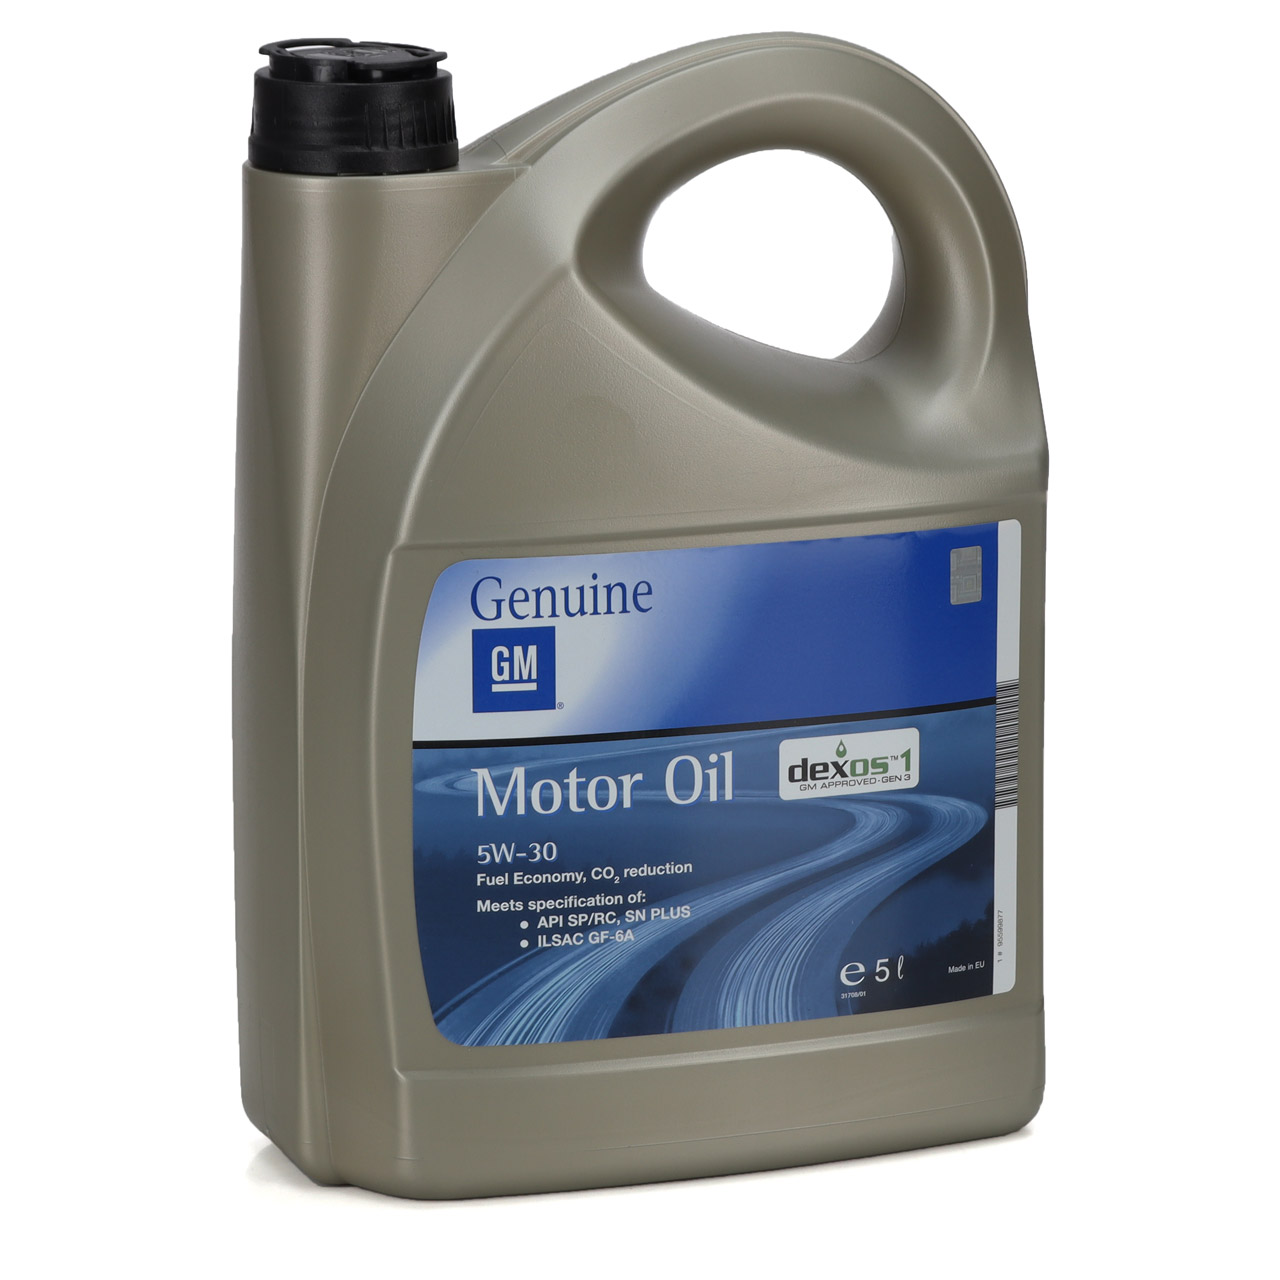 5W30 Motoröl – Das richtige Öl für mein Auto? 